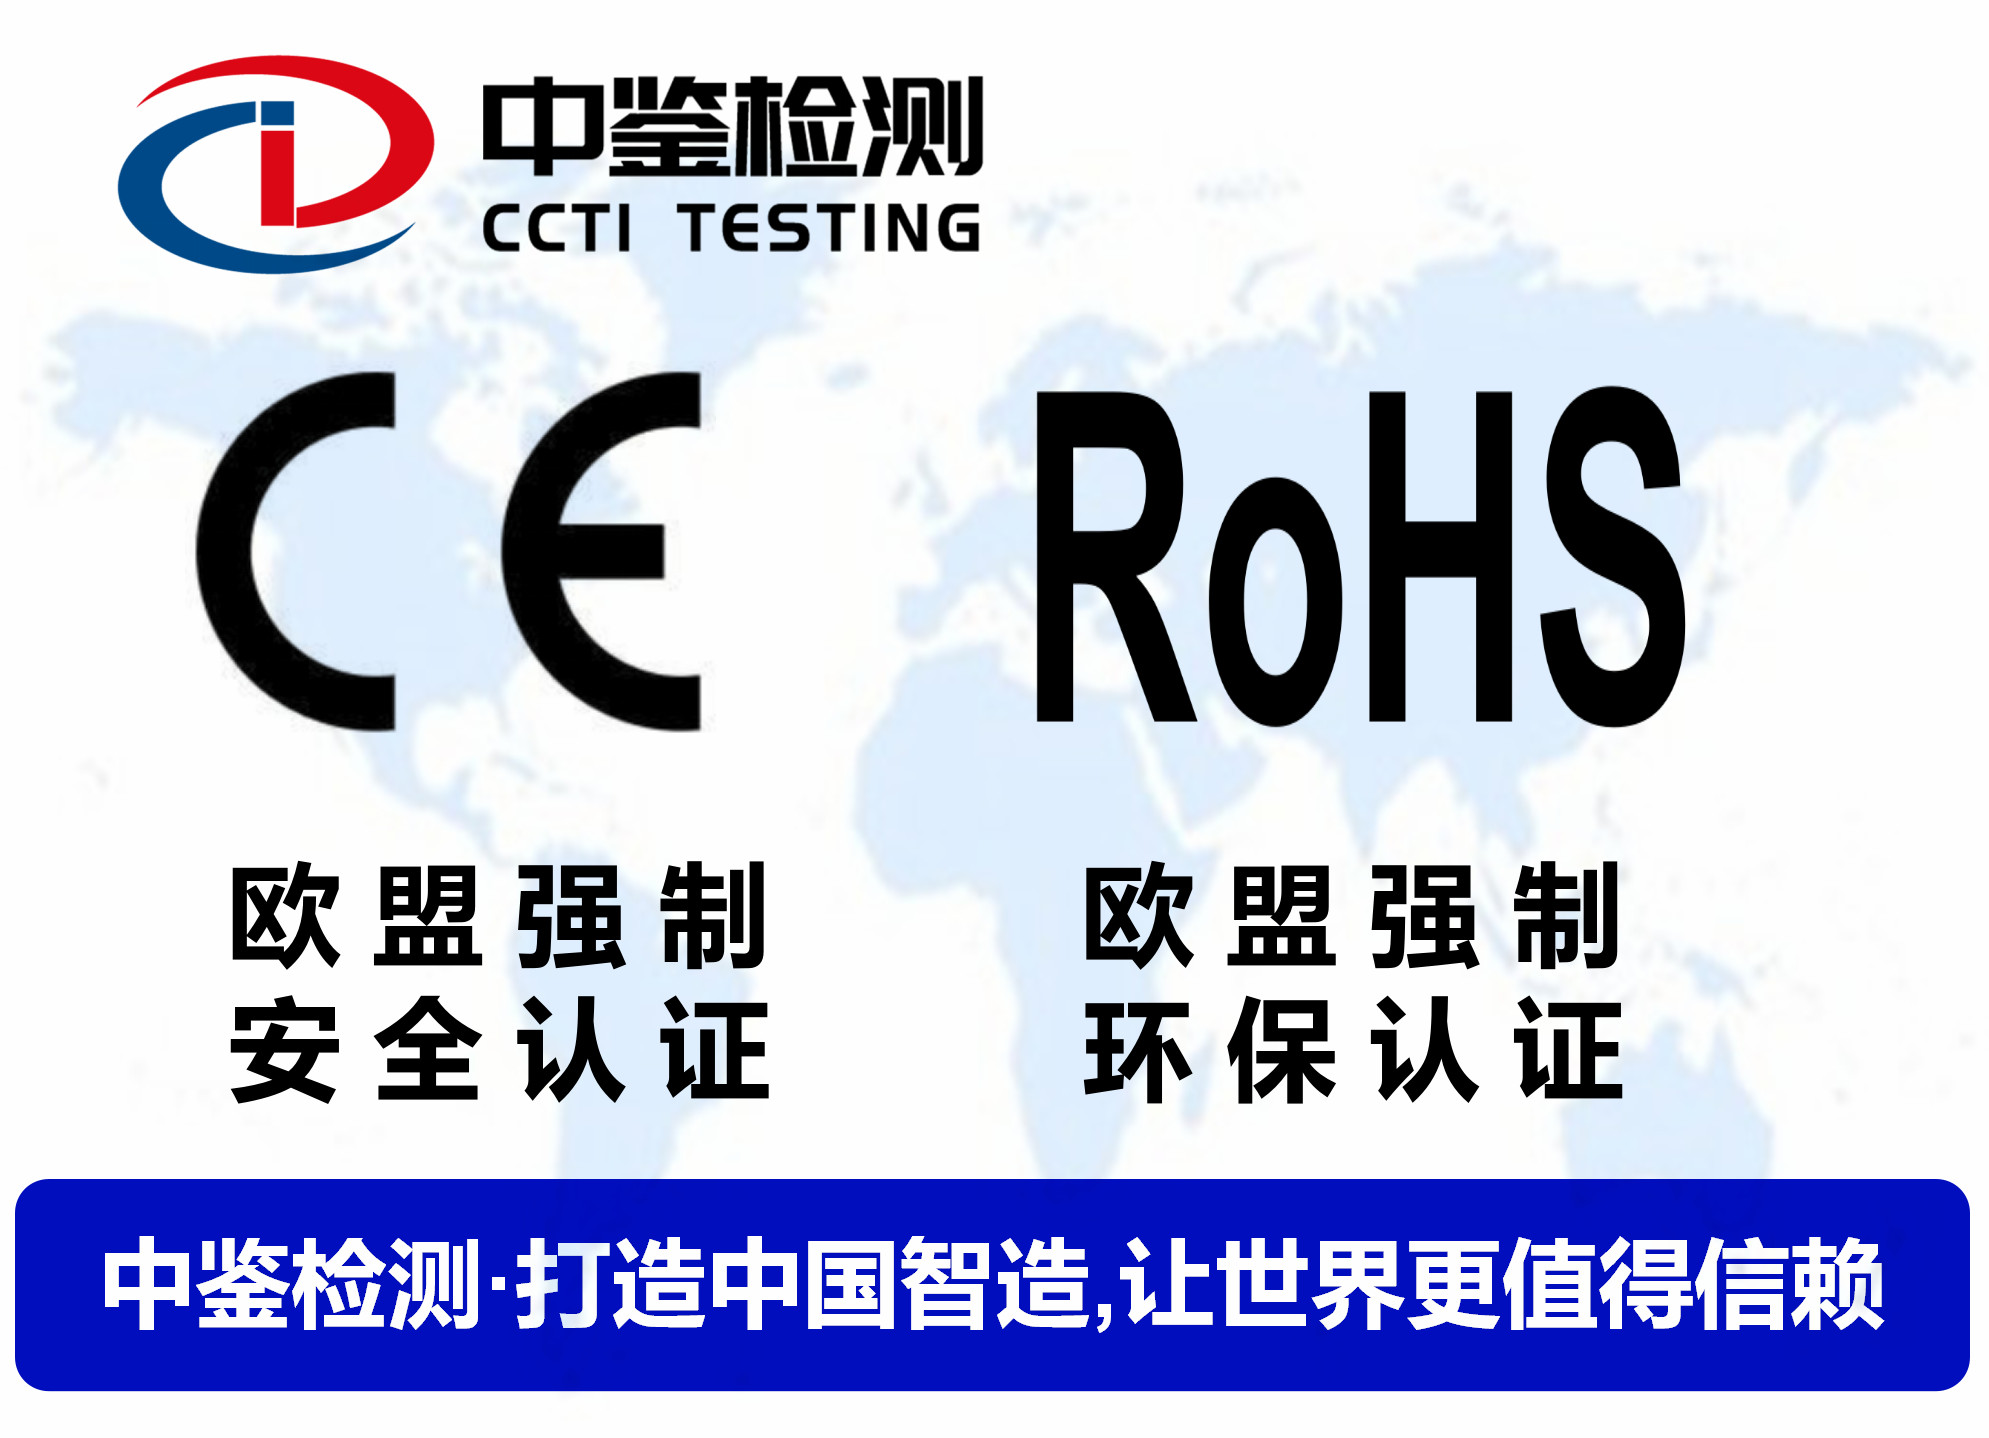 暖手宝CE认证测试标准及要求